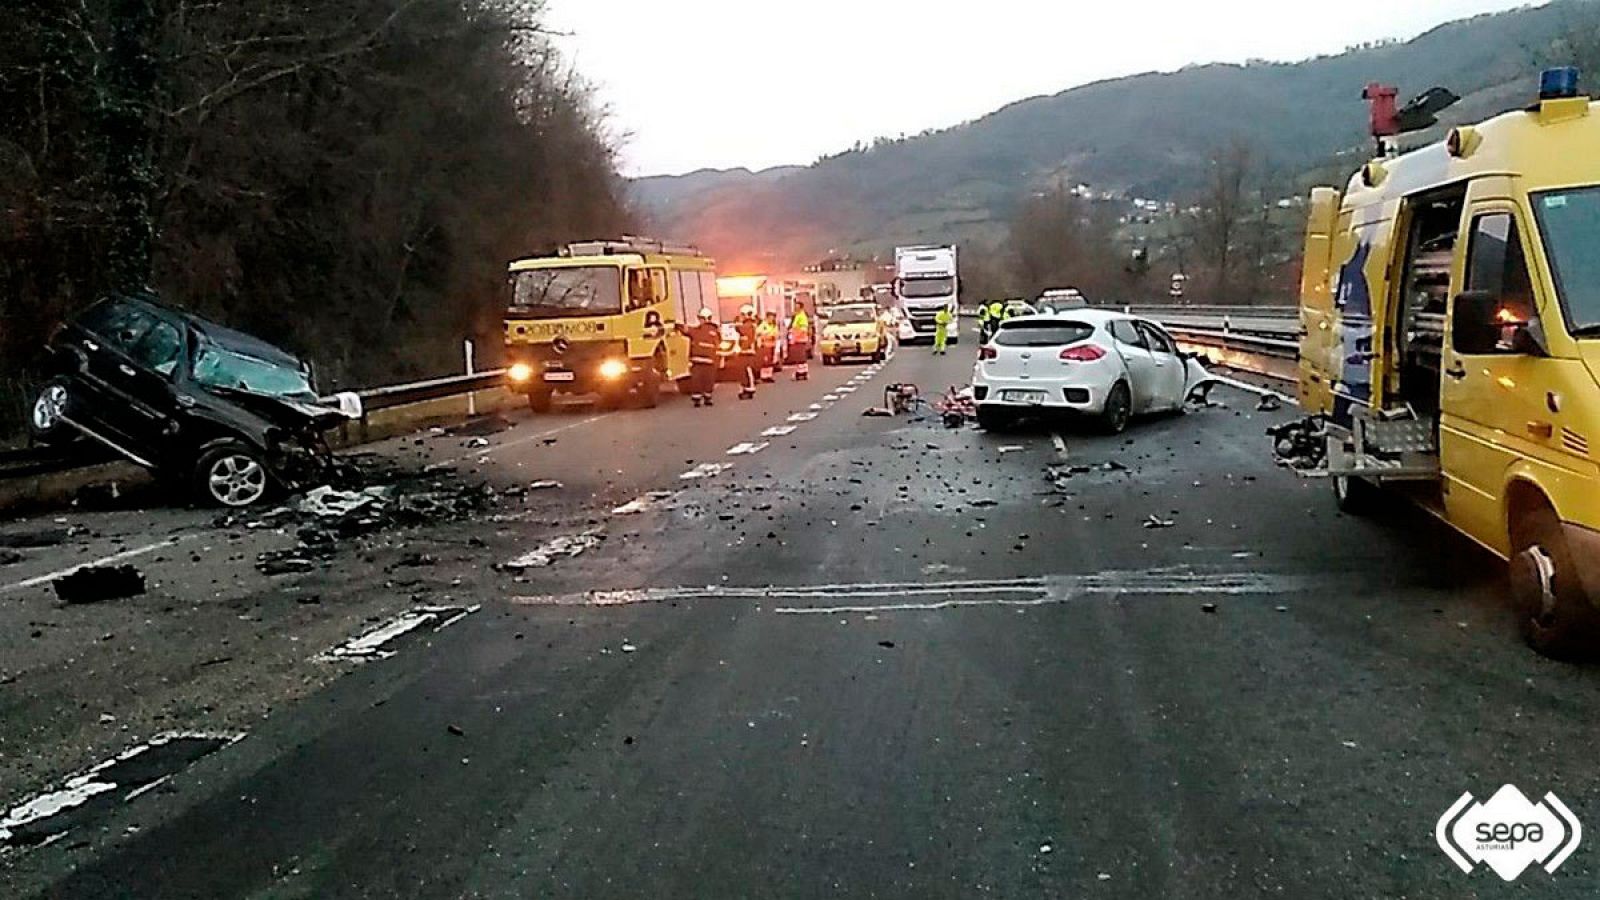 Los dos vehículos afectados por la colisión producida en Lena, Asturias